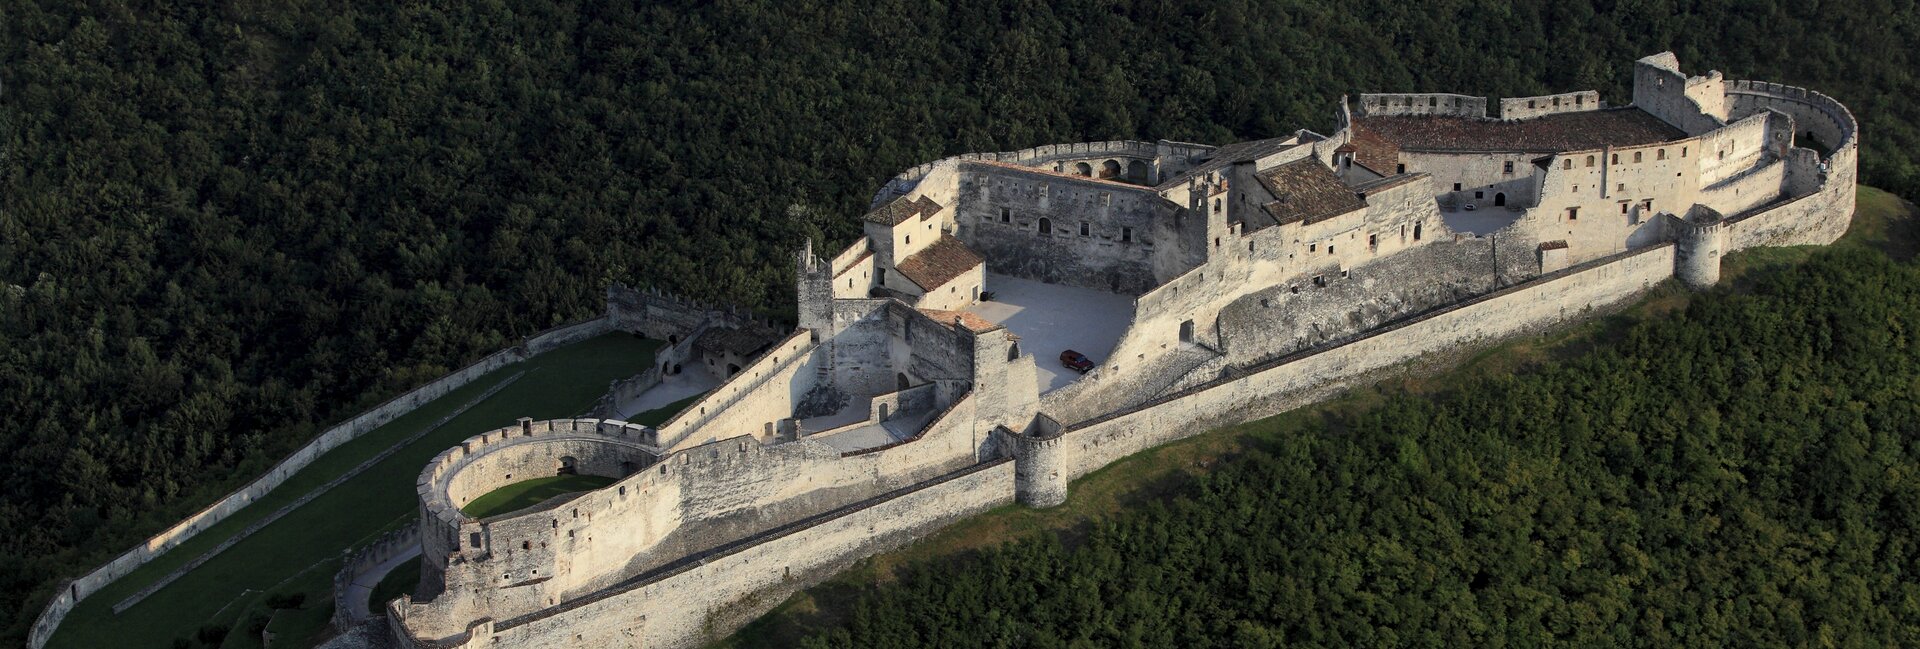 Vallagarina - Besenello - Veduta aerea di Castel Beseno
